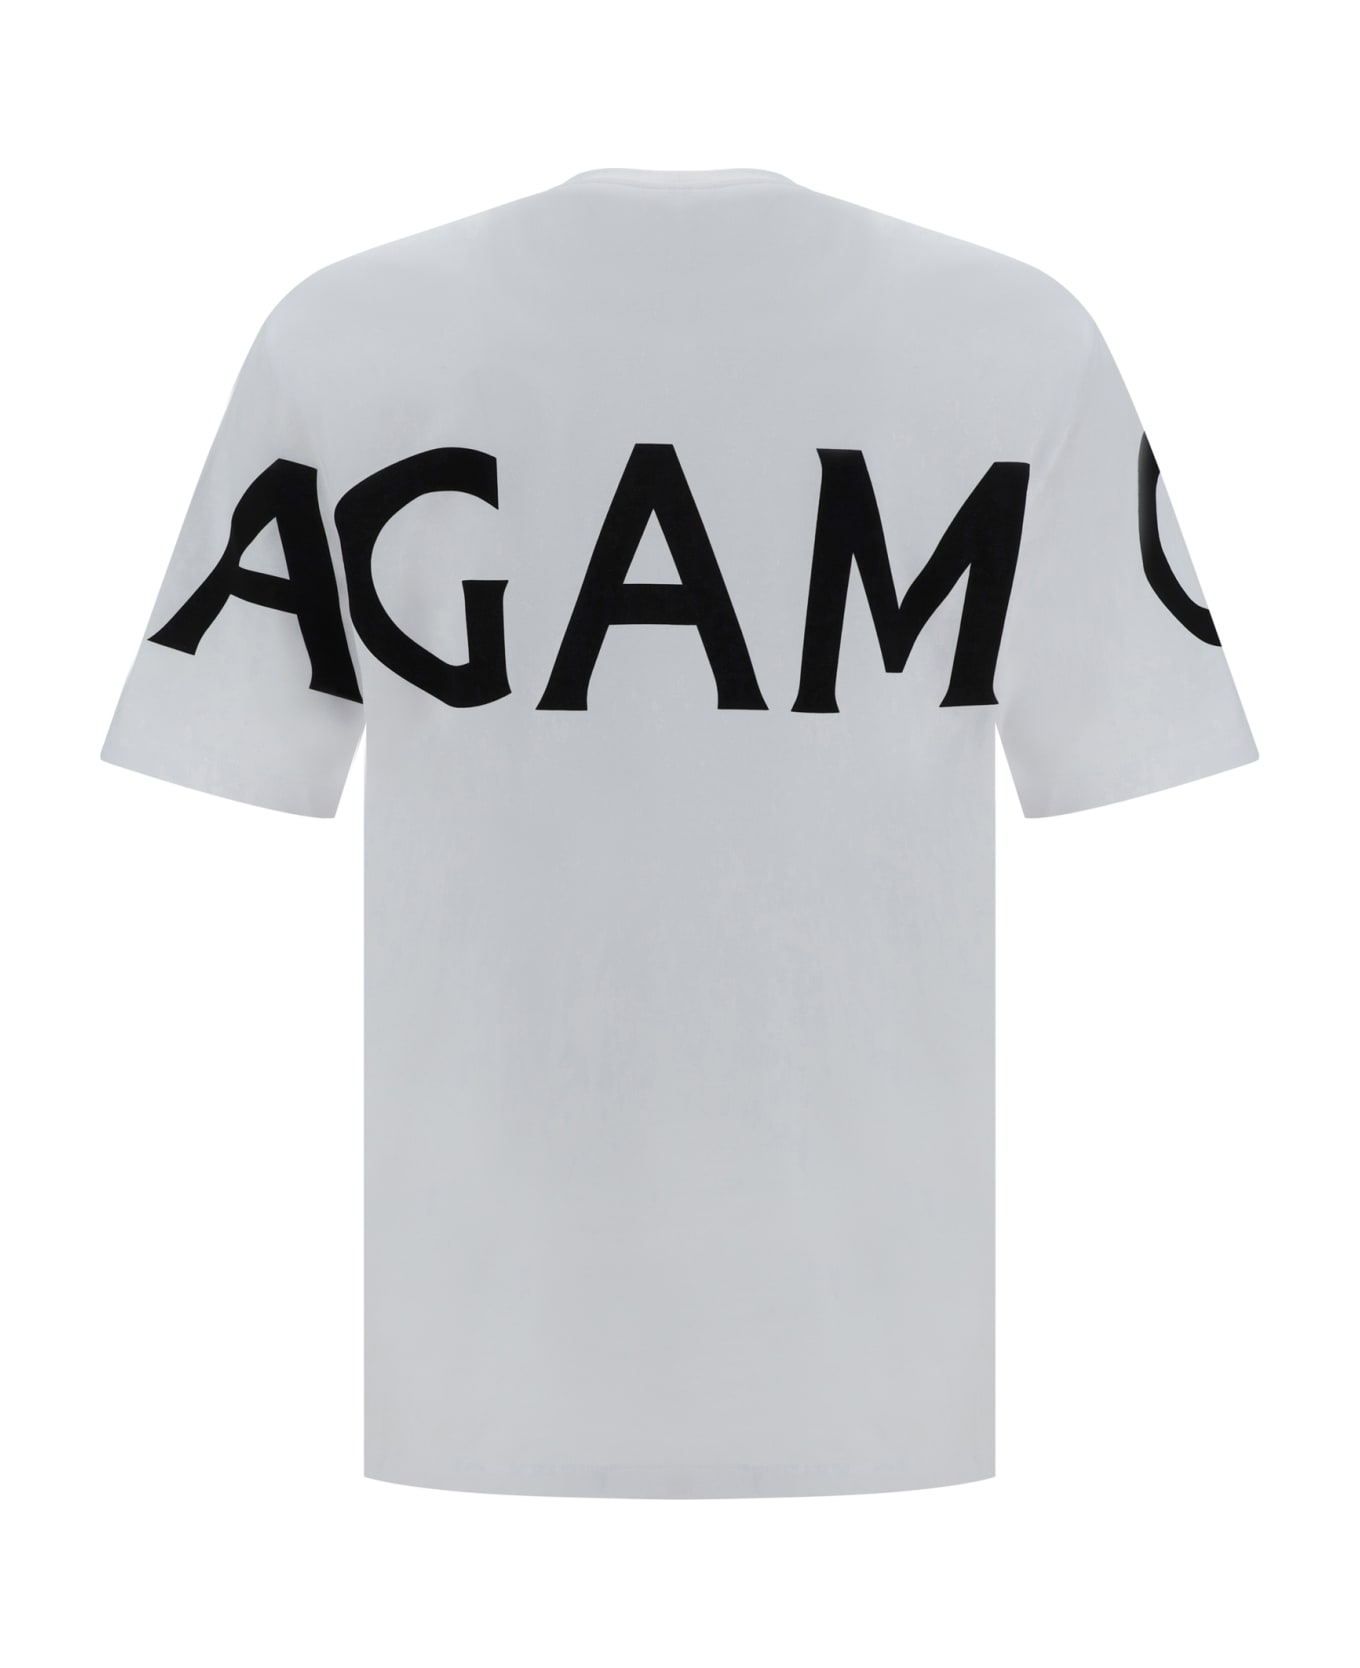 Ferragamo T-shirt - Black-white